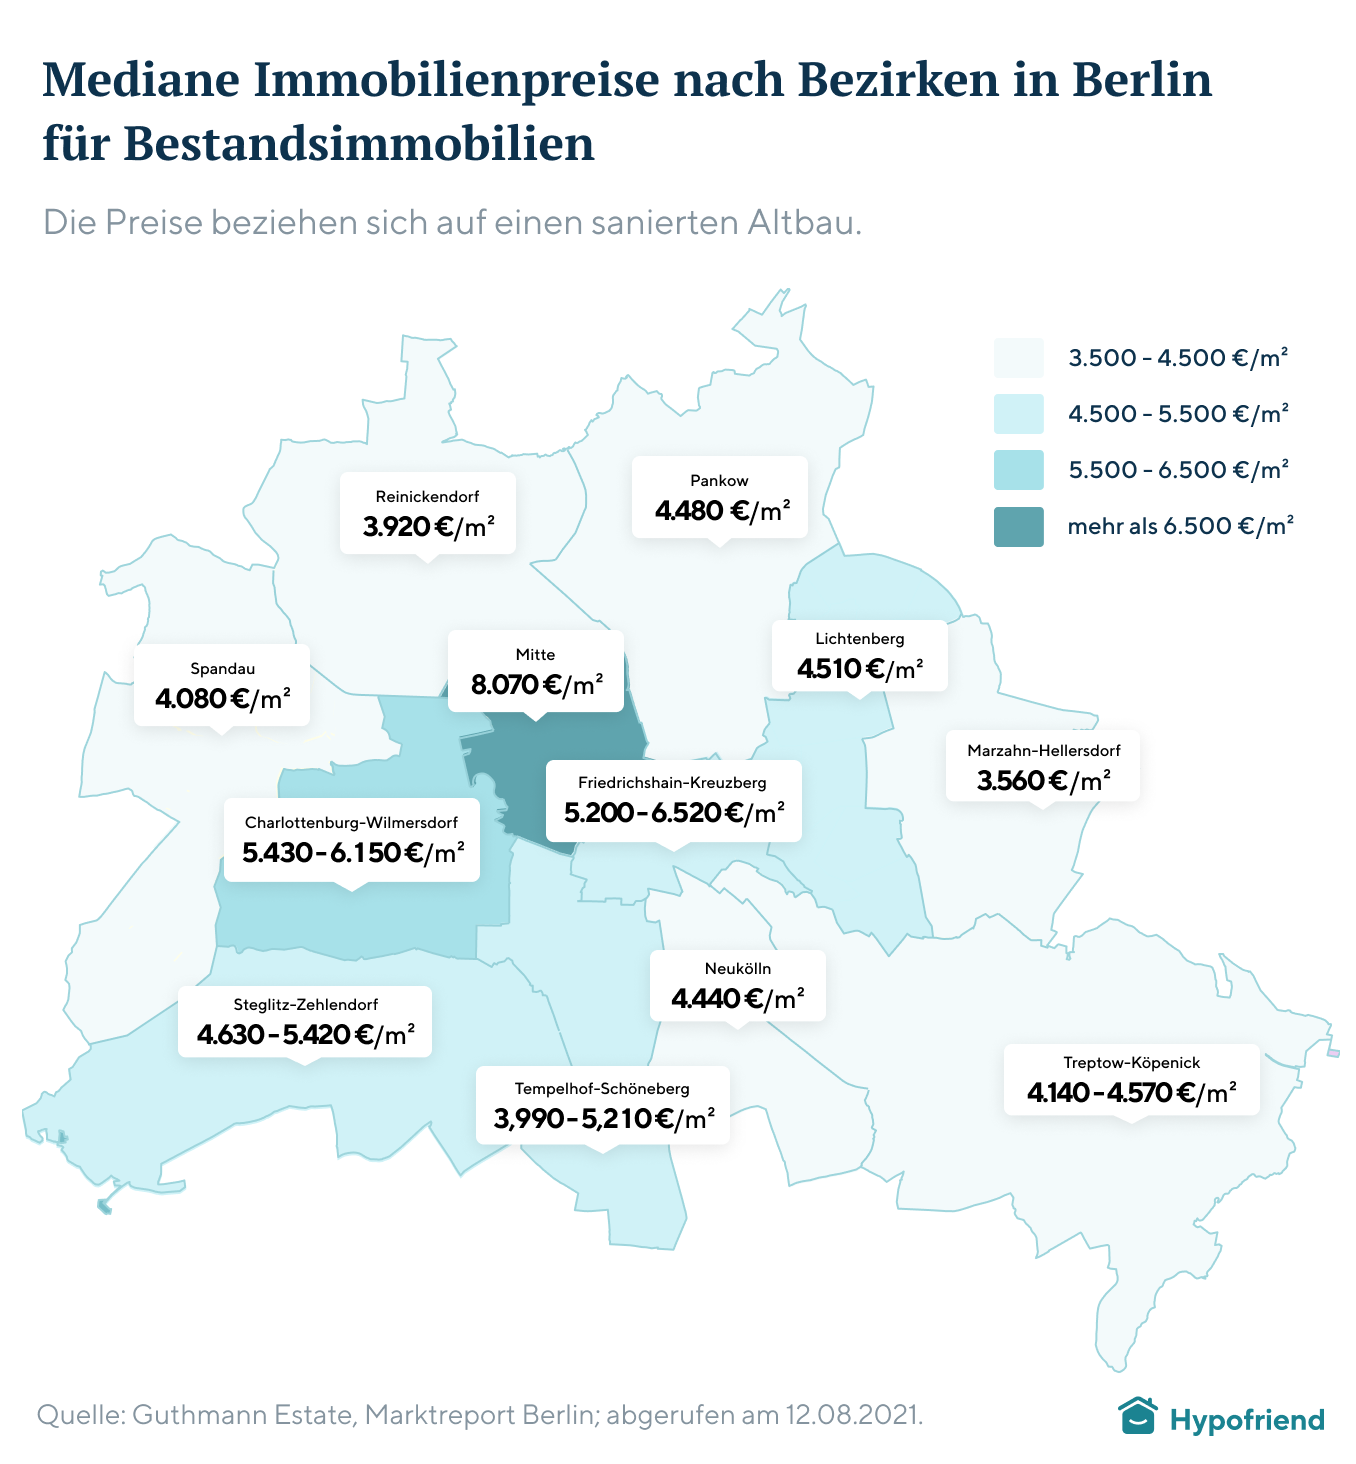 Mediane Immobilienpreise nach Bezirken in Berlin für Bestandsimmobilien